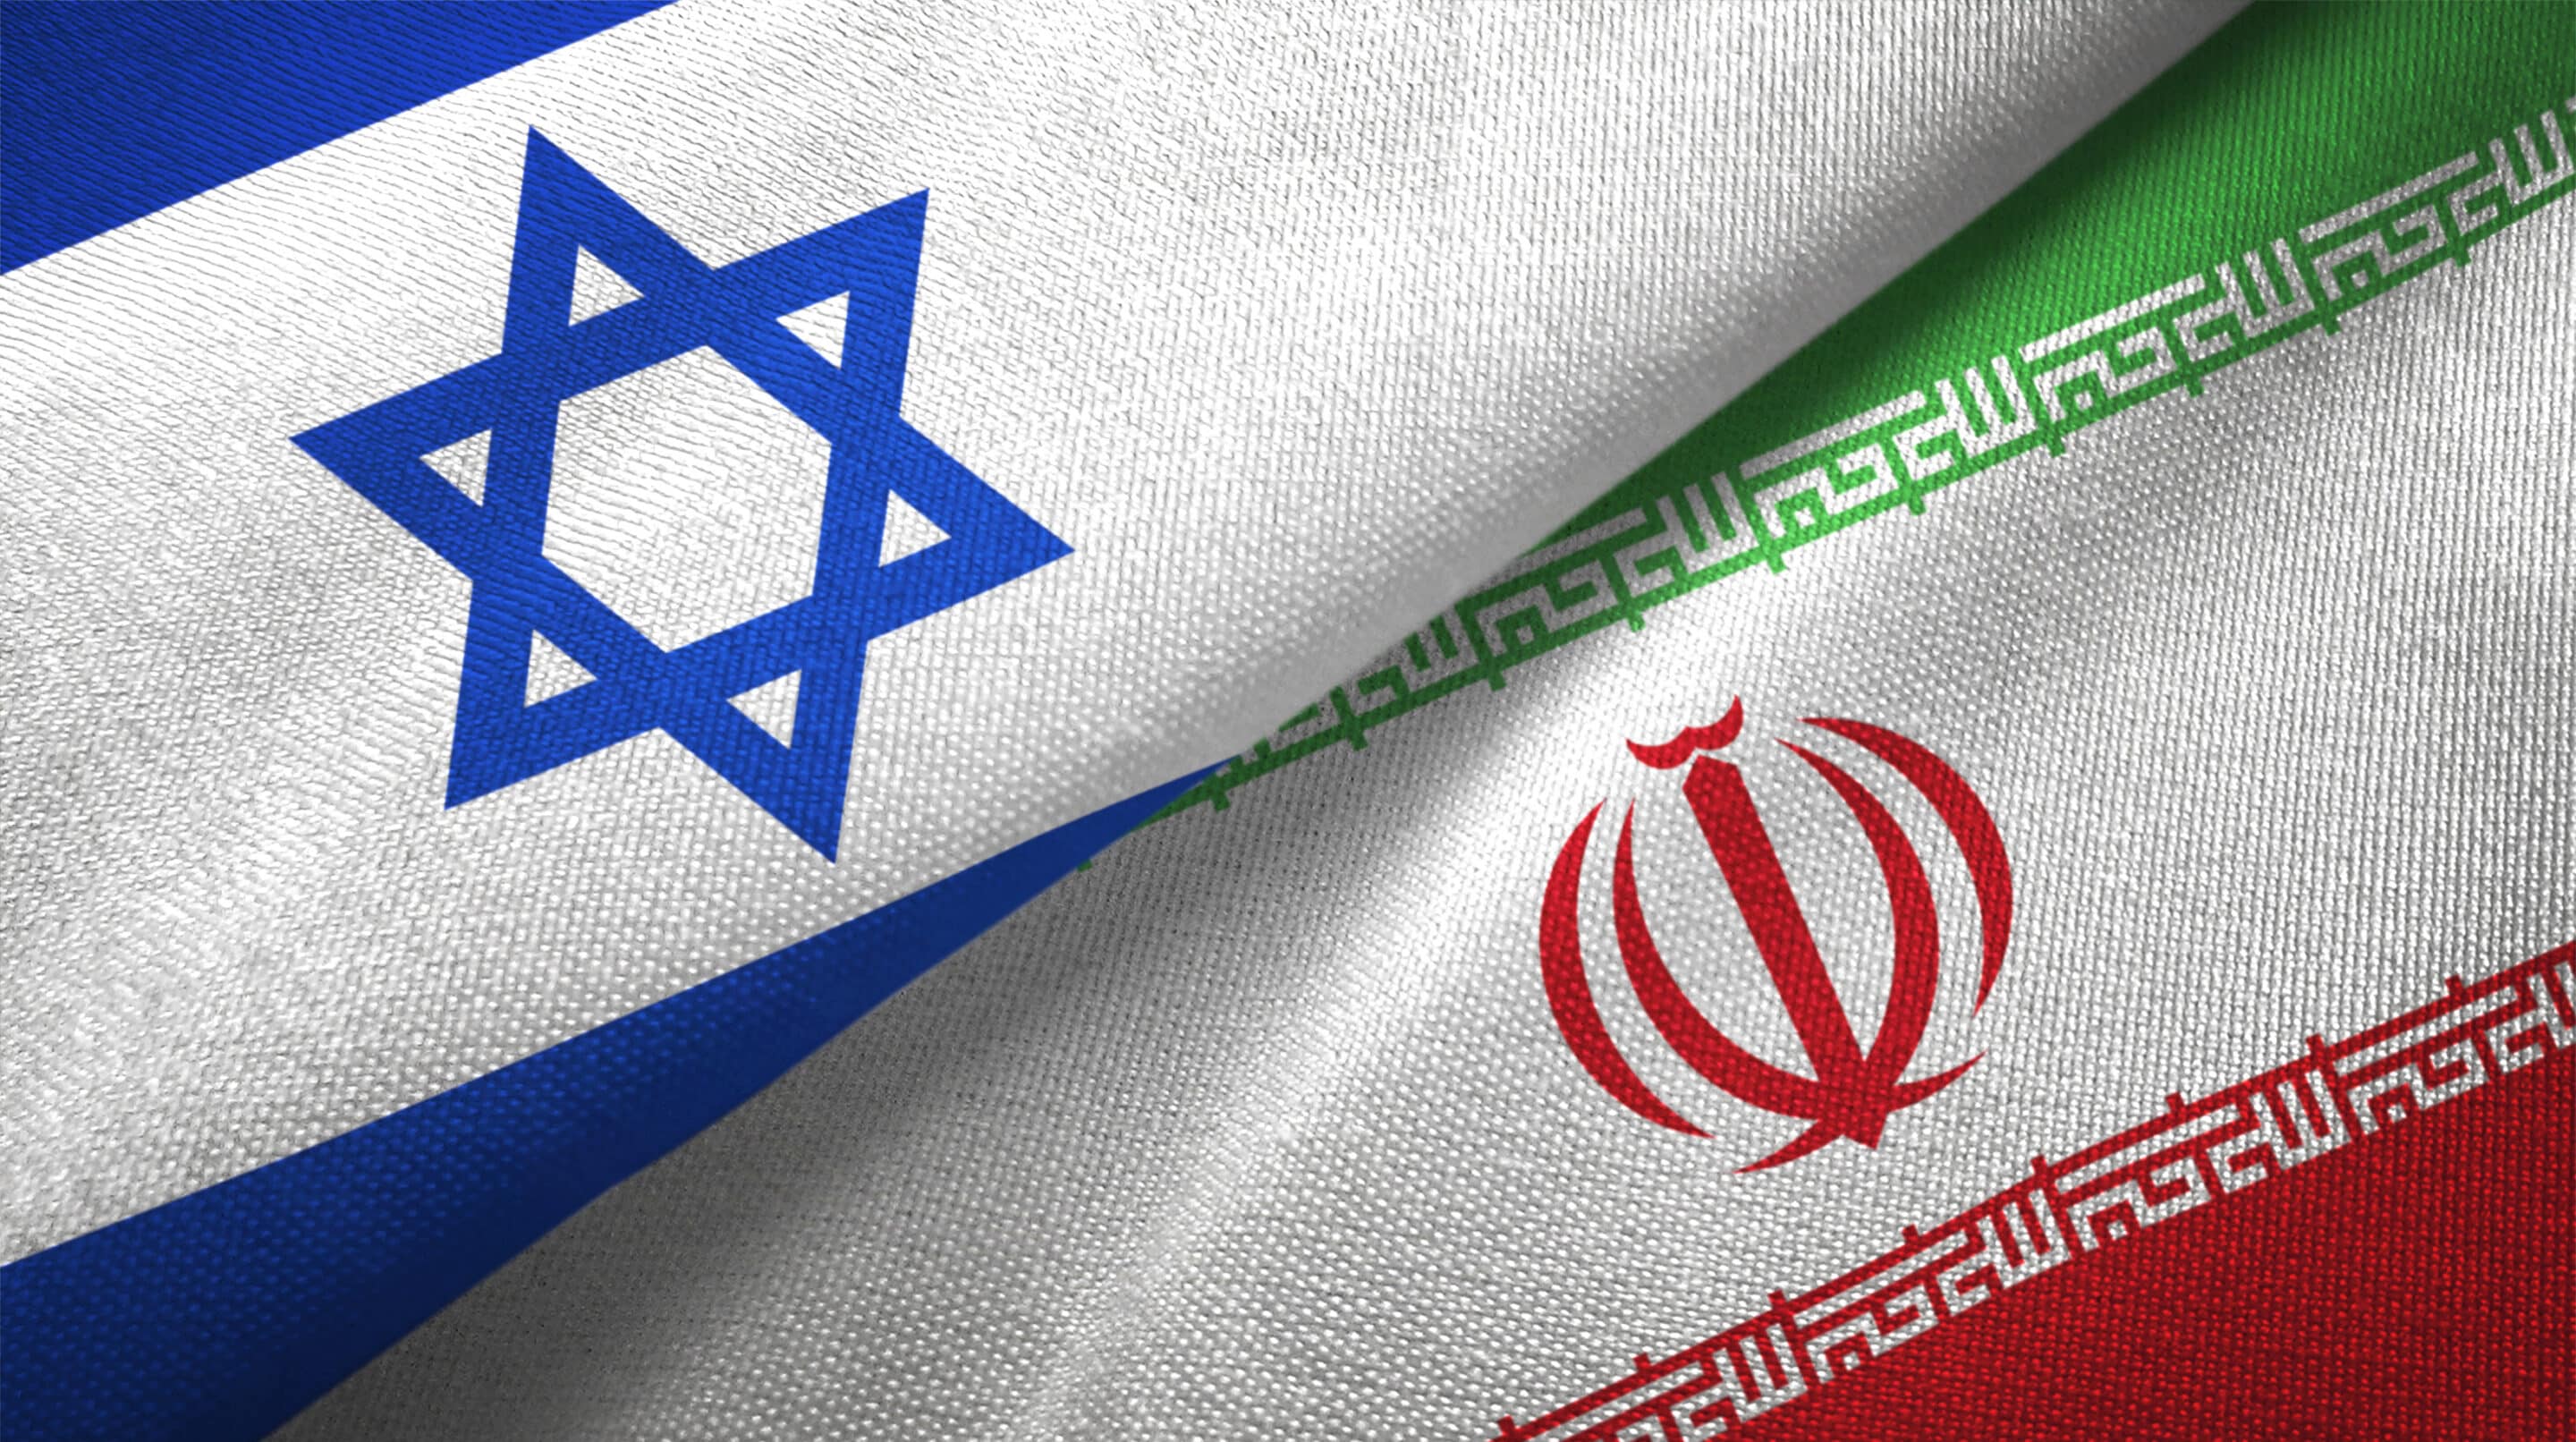 Chmelár: politici rázne odsúdili útok Iránu na Izrael. Zámerne však vynechali kontext celého sporu. 3